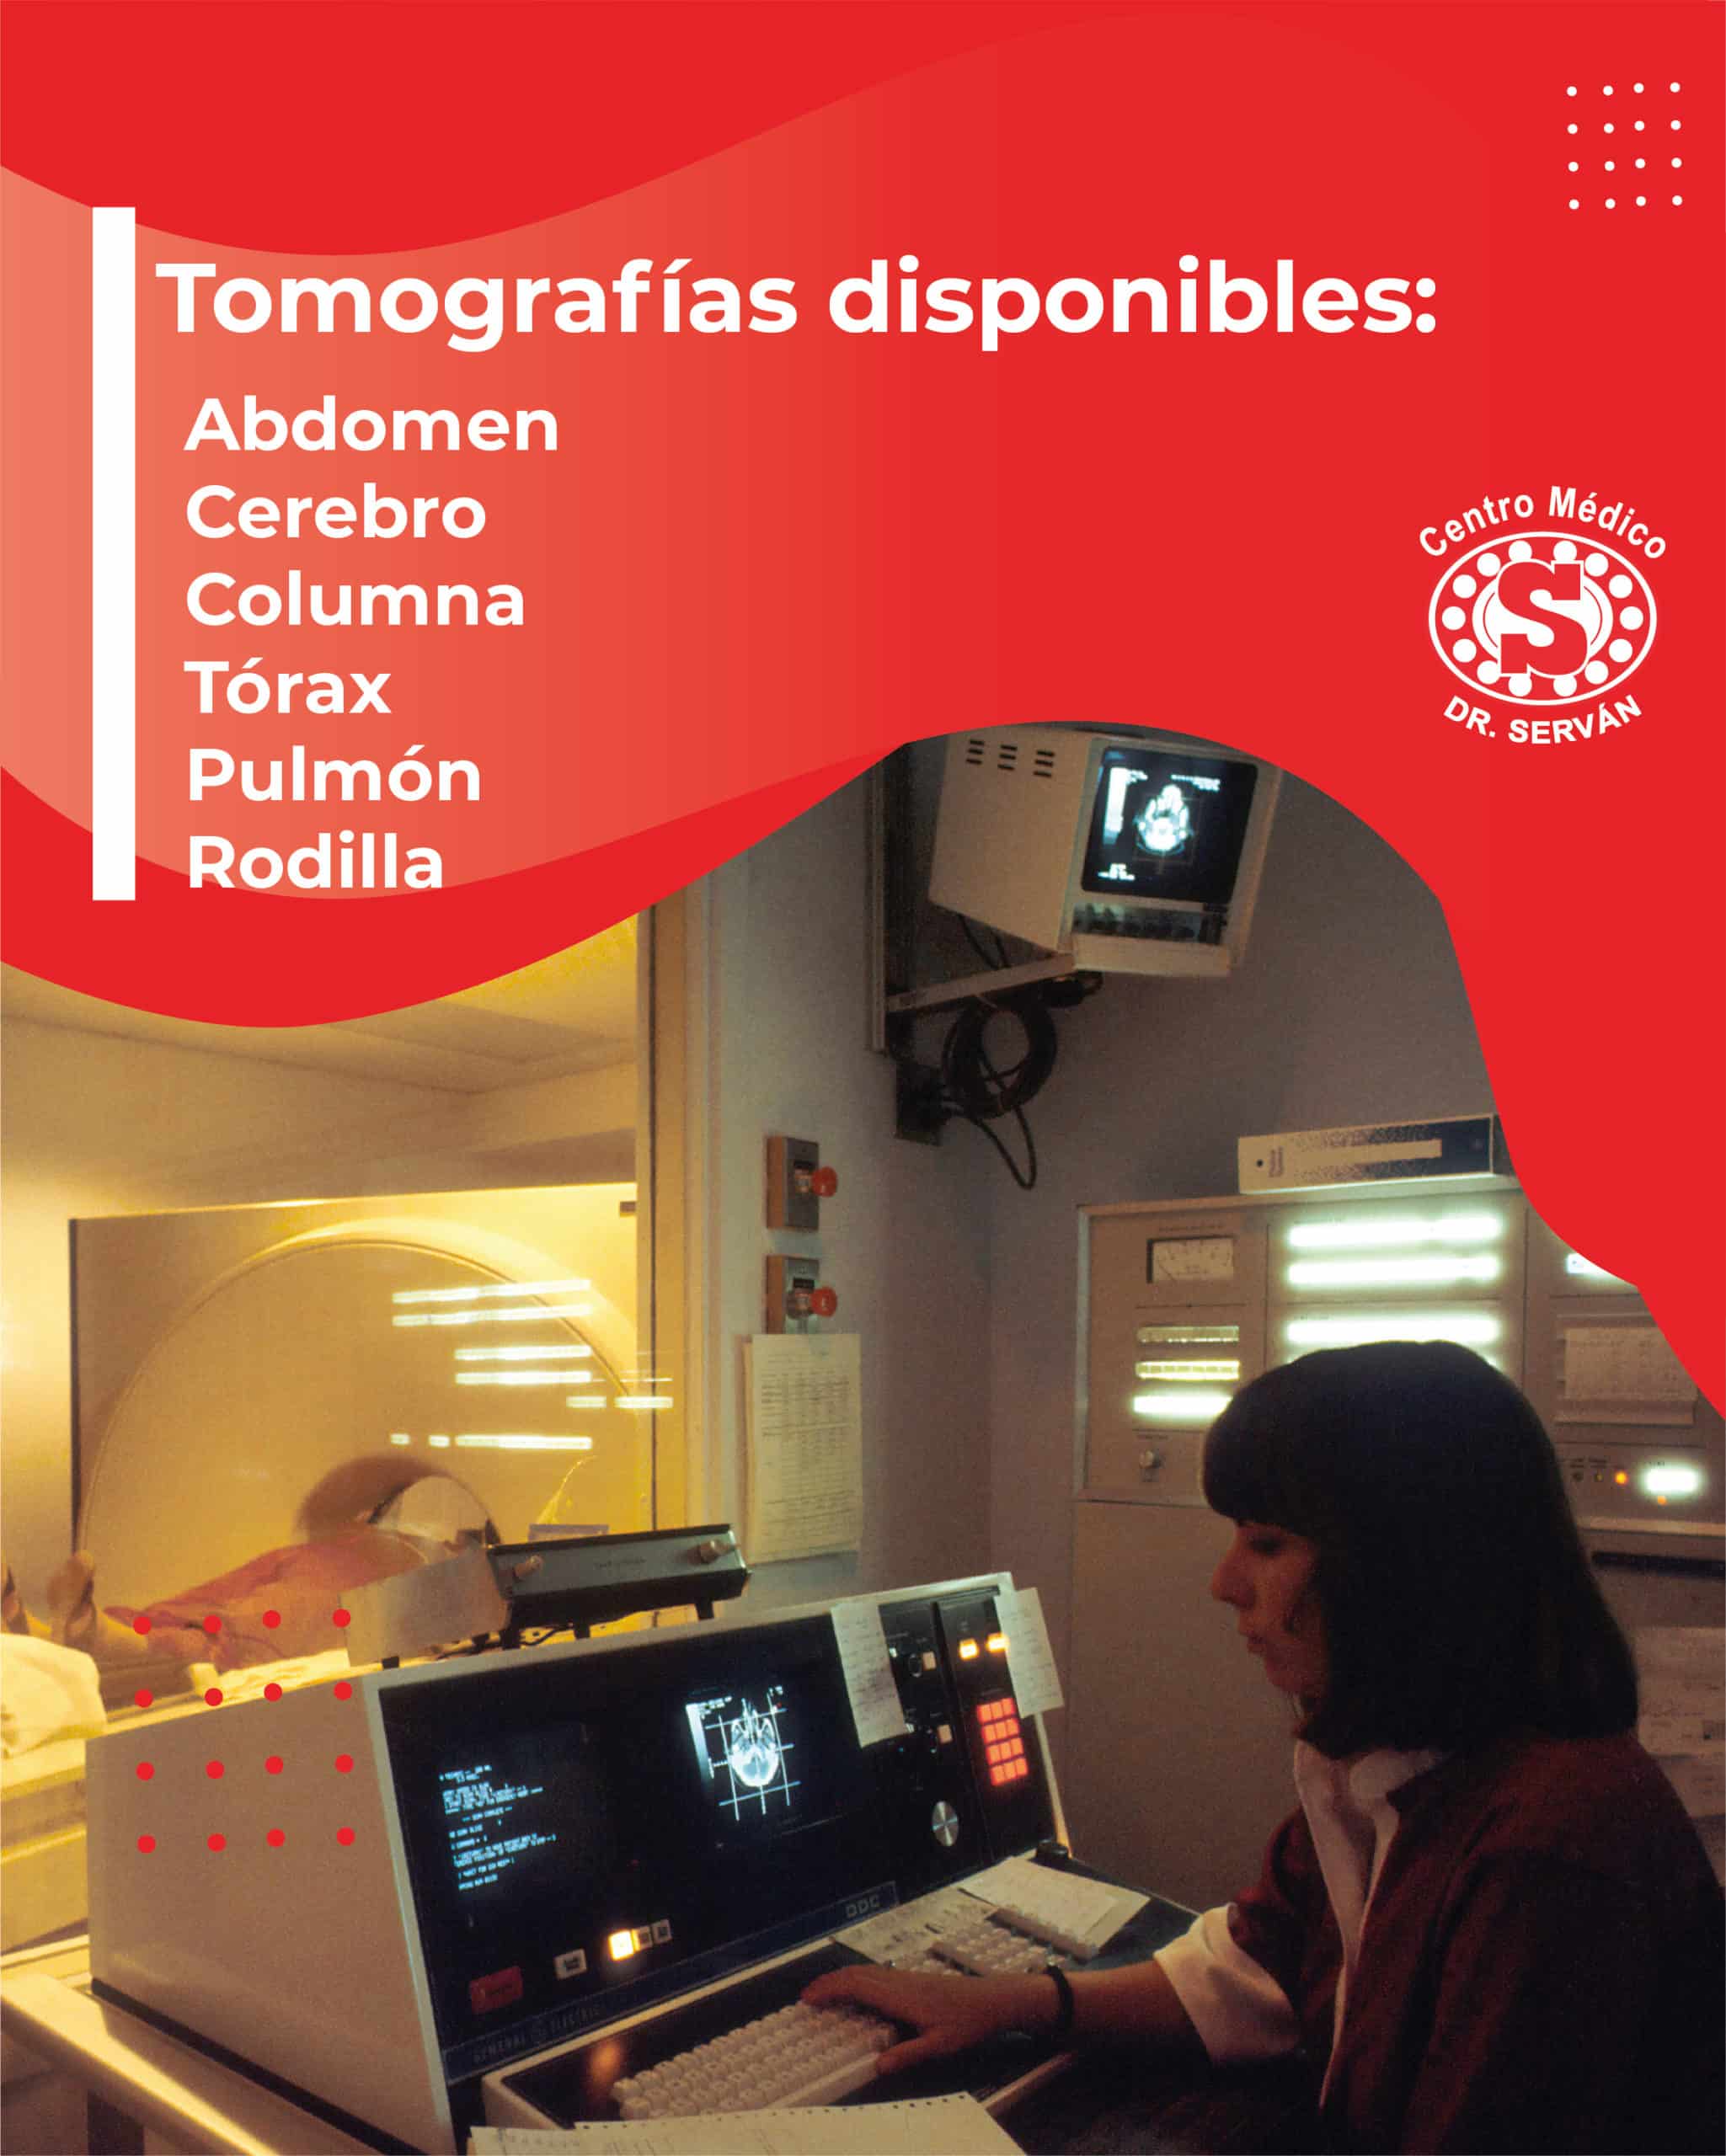 Tipos de tomografías disponible en el centro médico